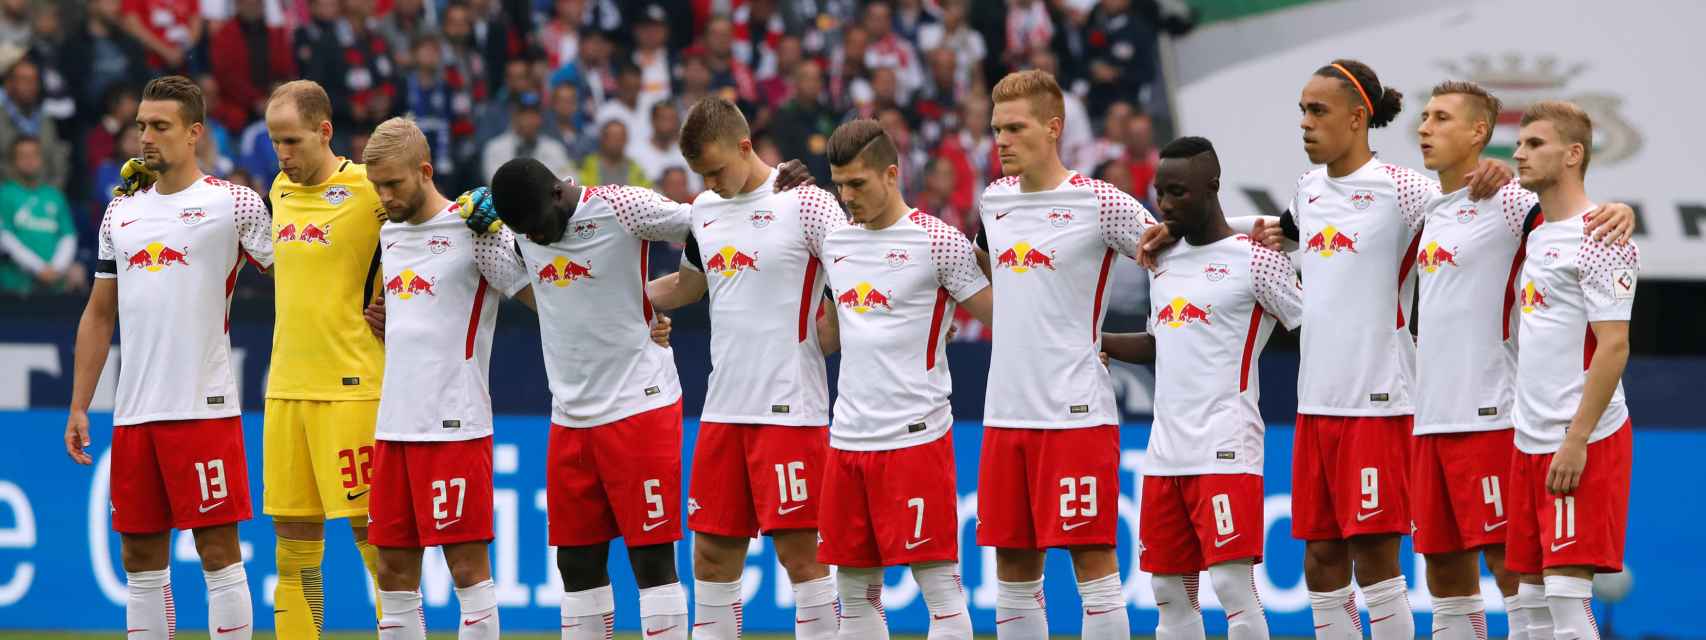 Jugadores del Leipzig en un partido del conjunto alemán.